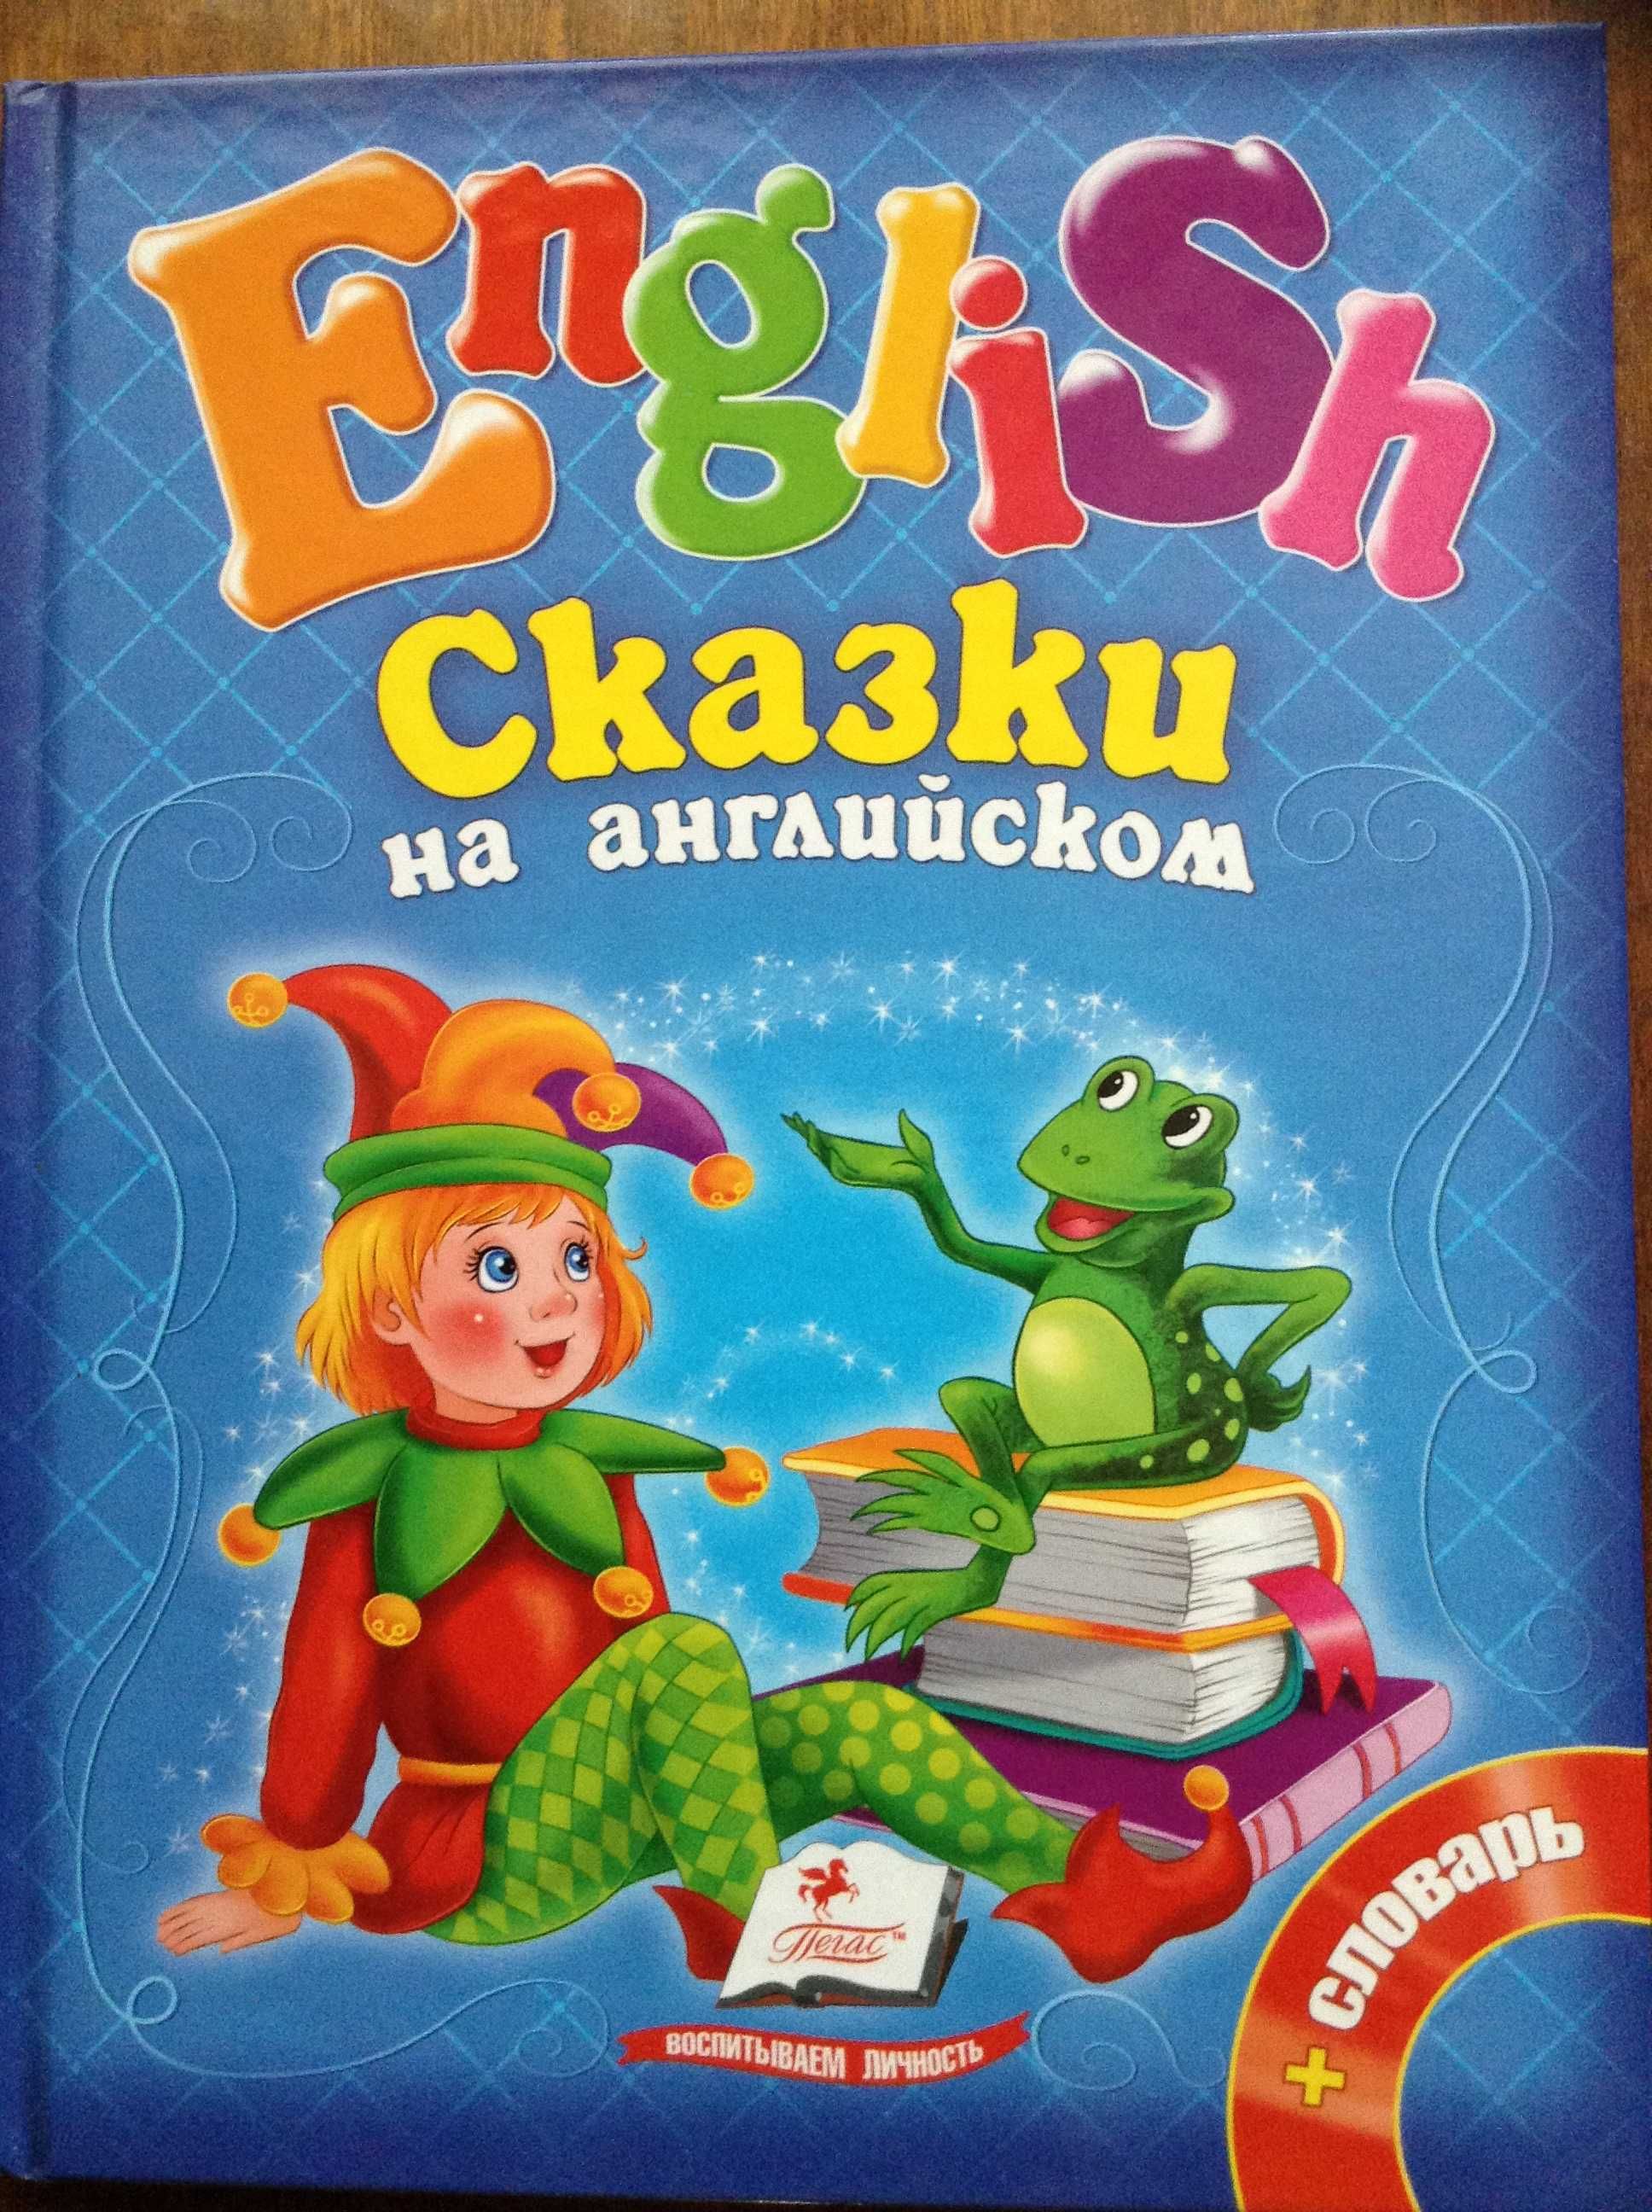 Продам книжку для детей"Сказки на English"